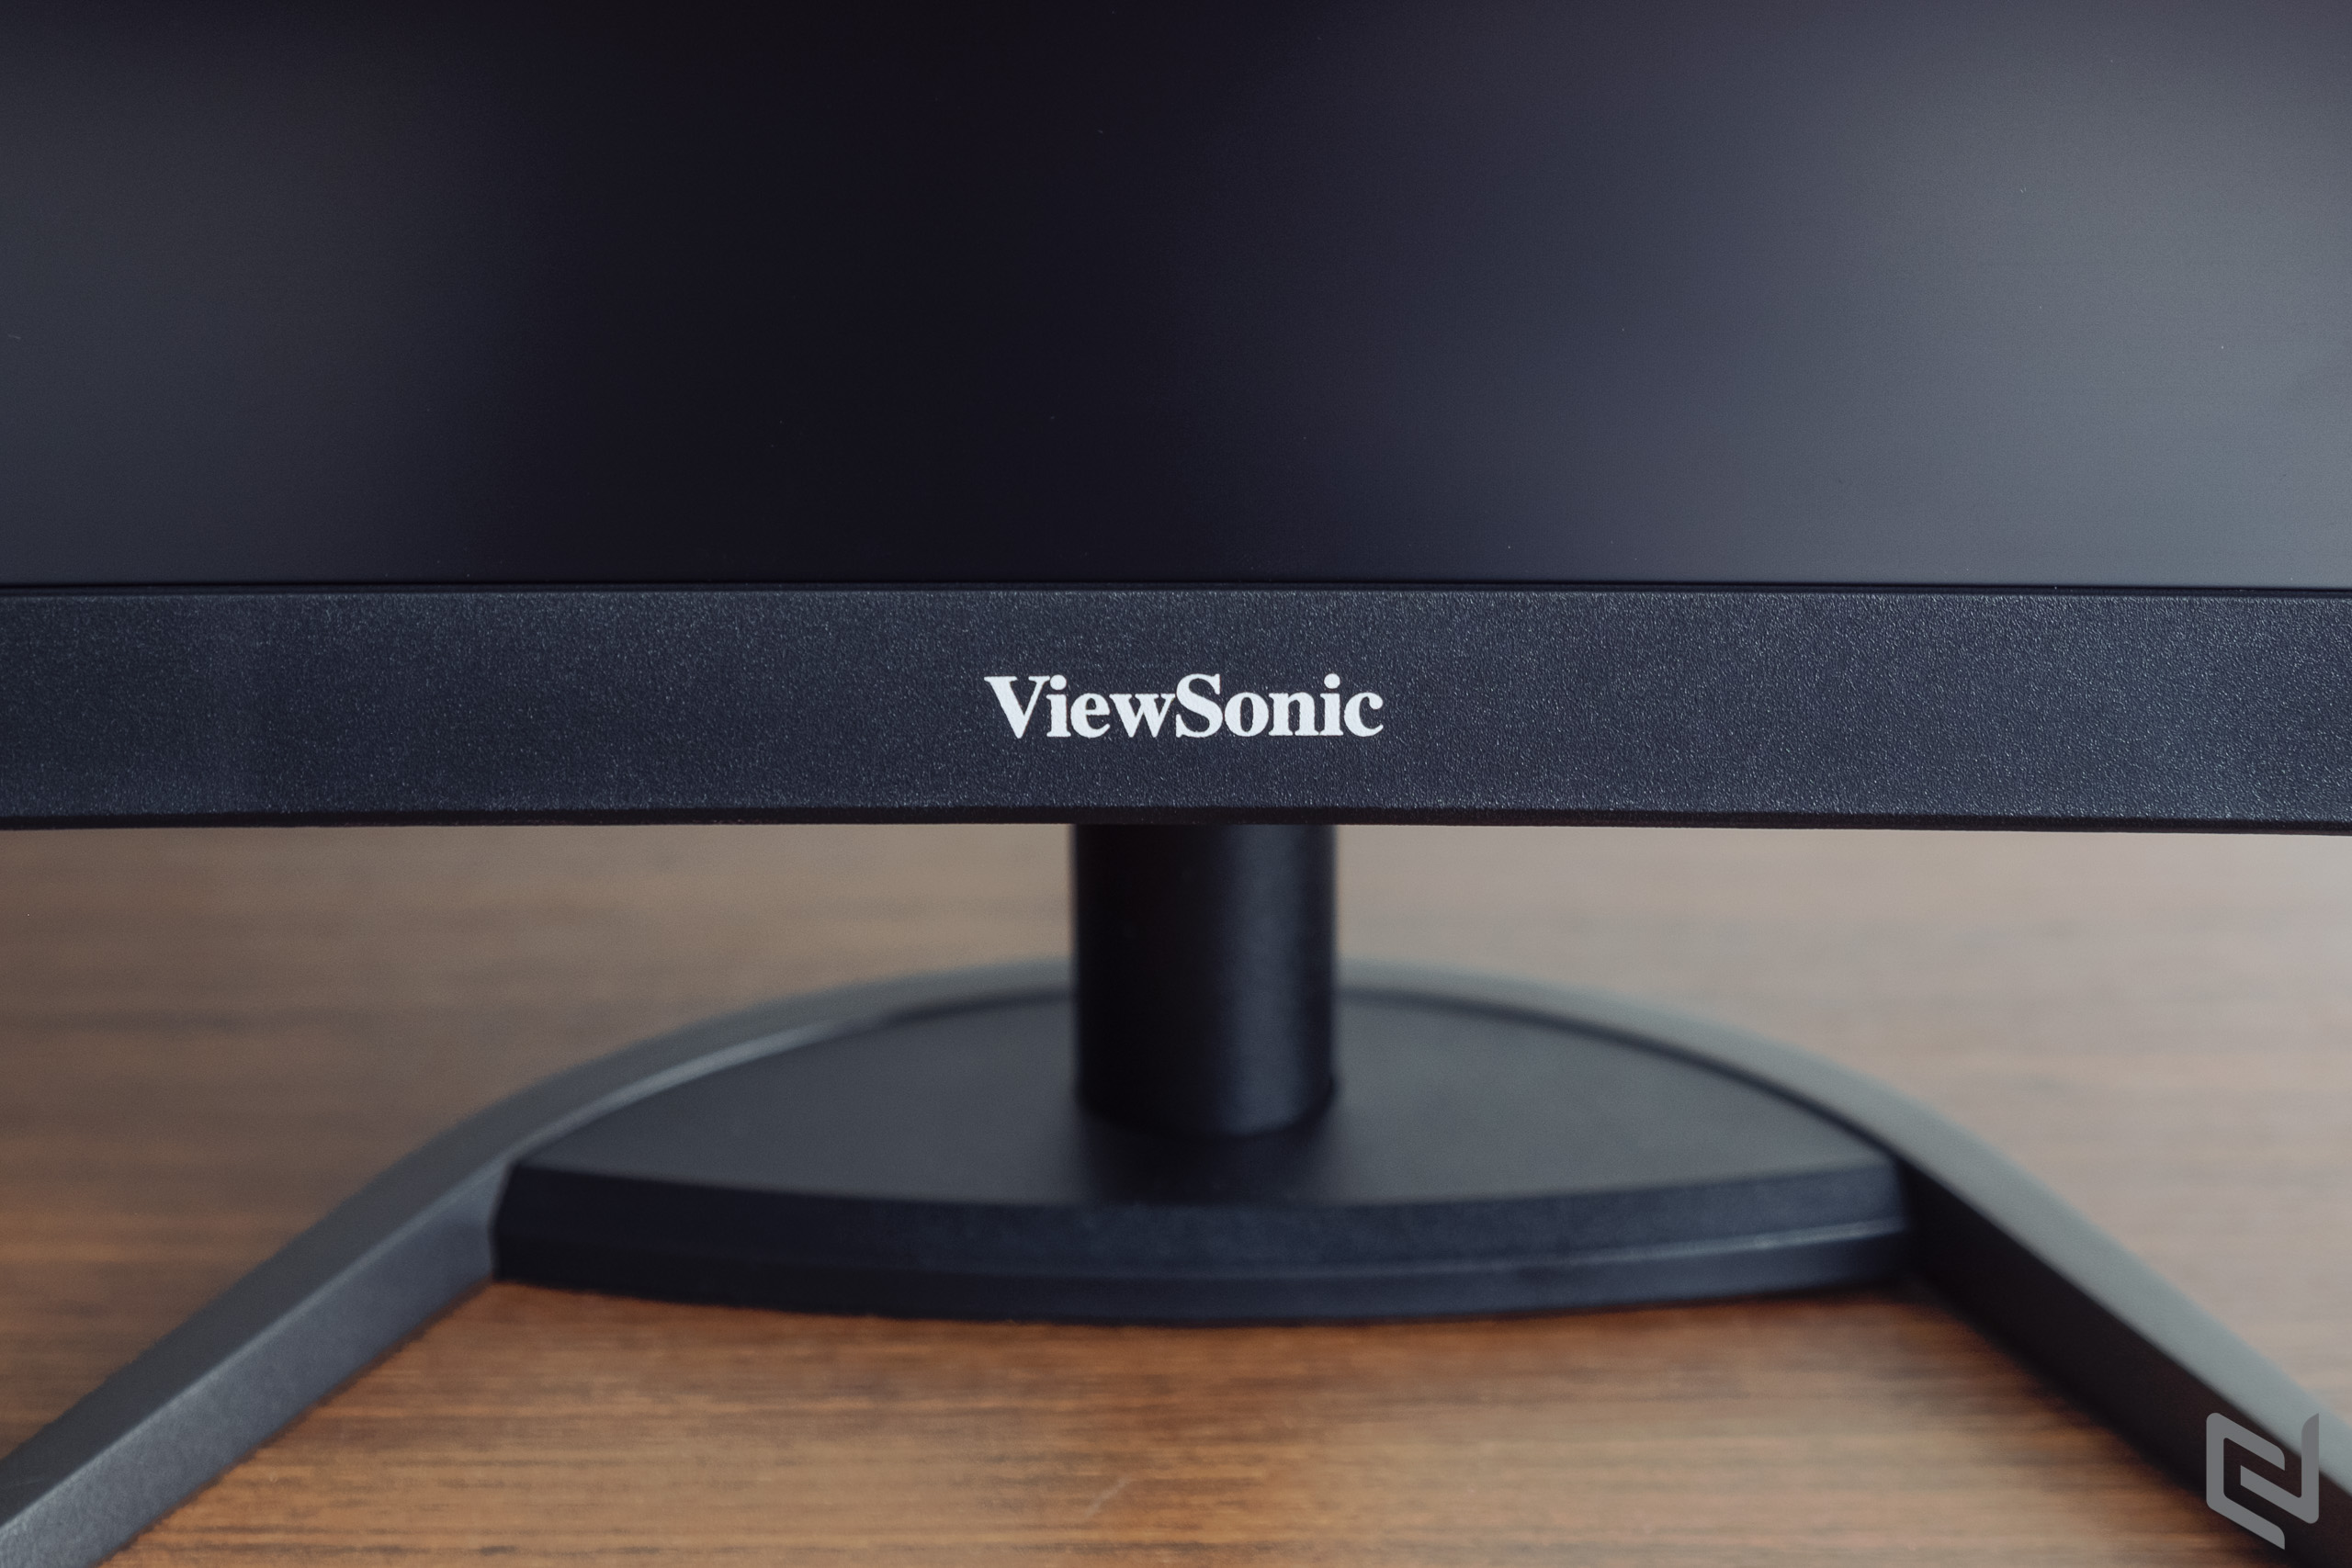 Đánh giá màn hình chơi game ViewSonic VX3268: Giá hấp dẫn, độ cong 1500R, QHD 144Hz